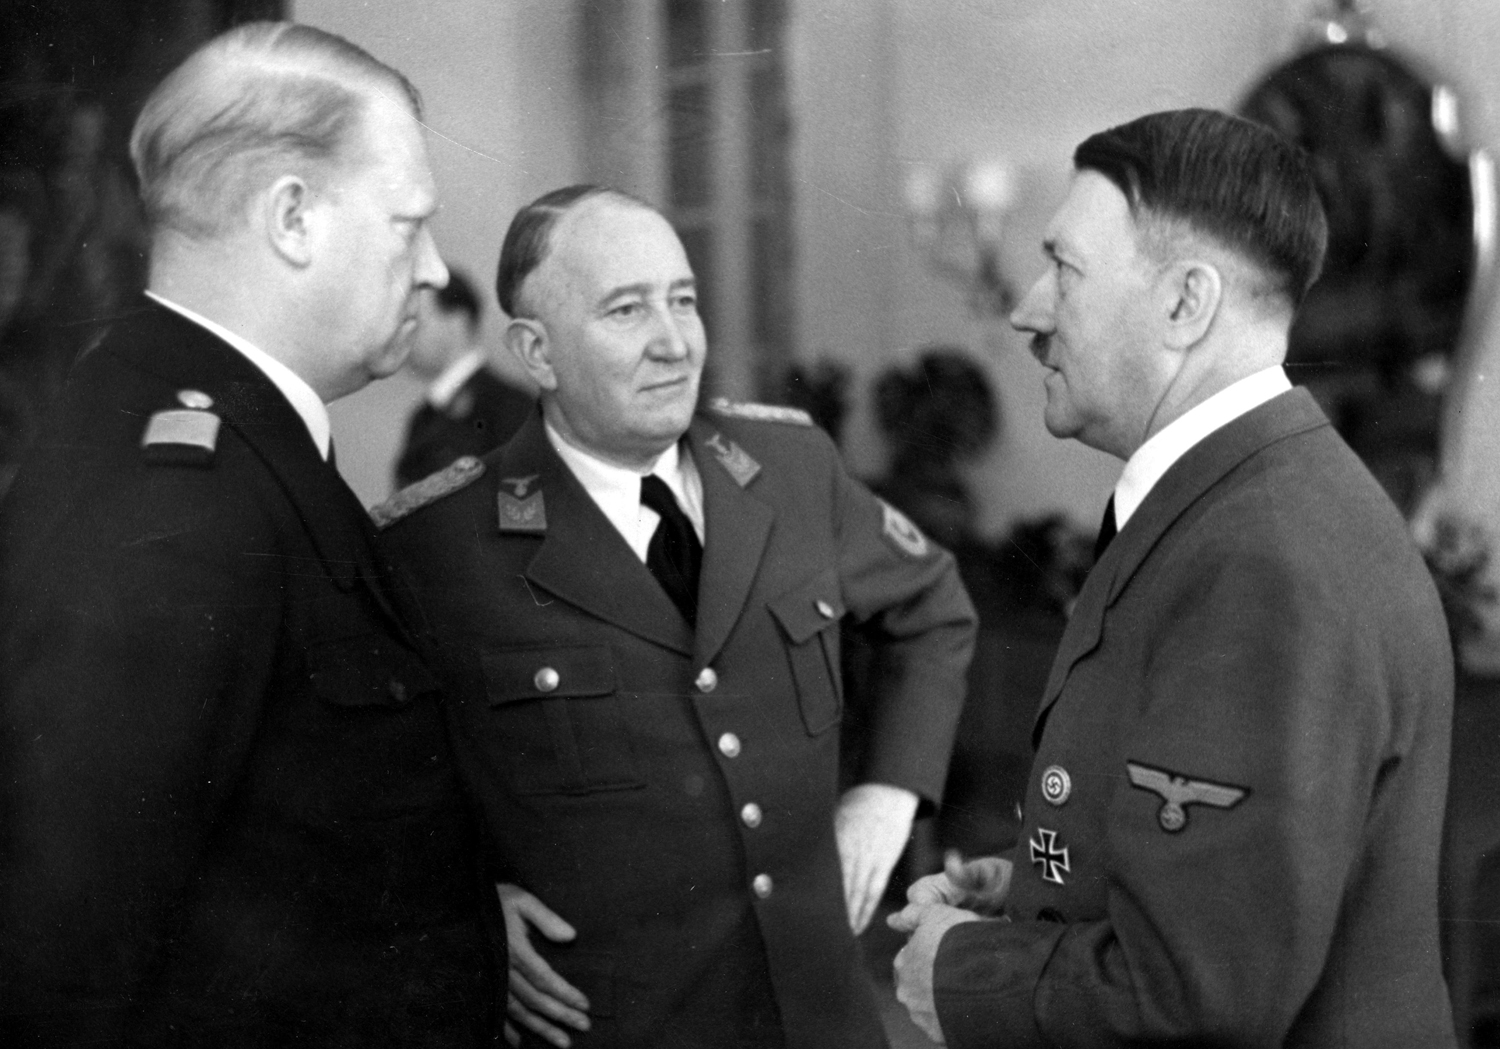 Adolf Hitler meets the Norwegian Prime Minister Vidkun Quisling and minister Albert Viljam Hagelin